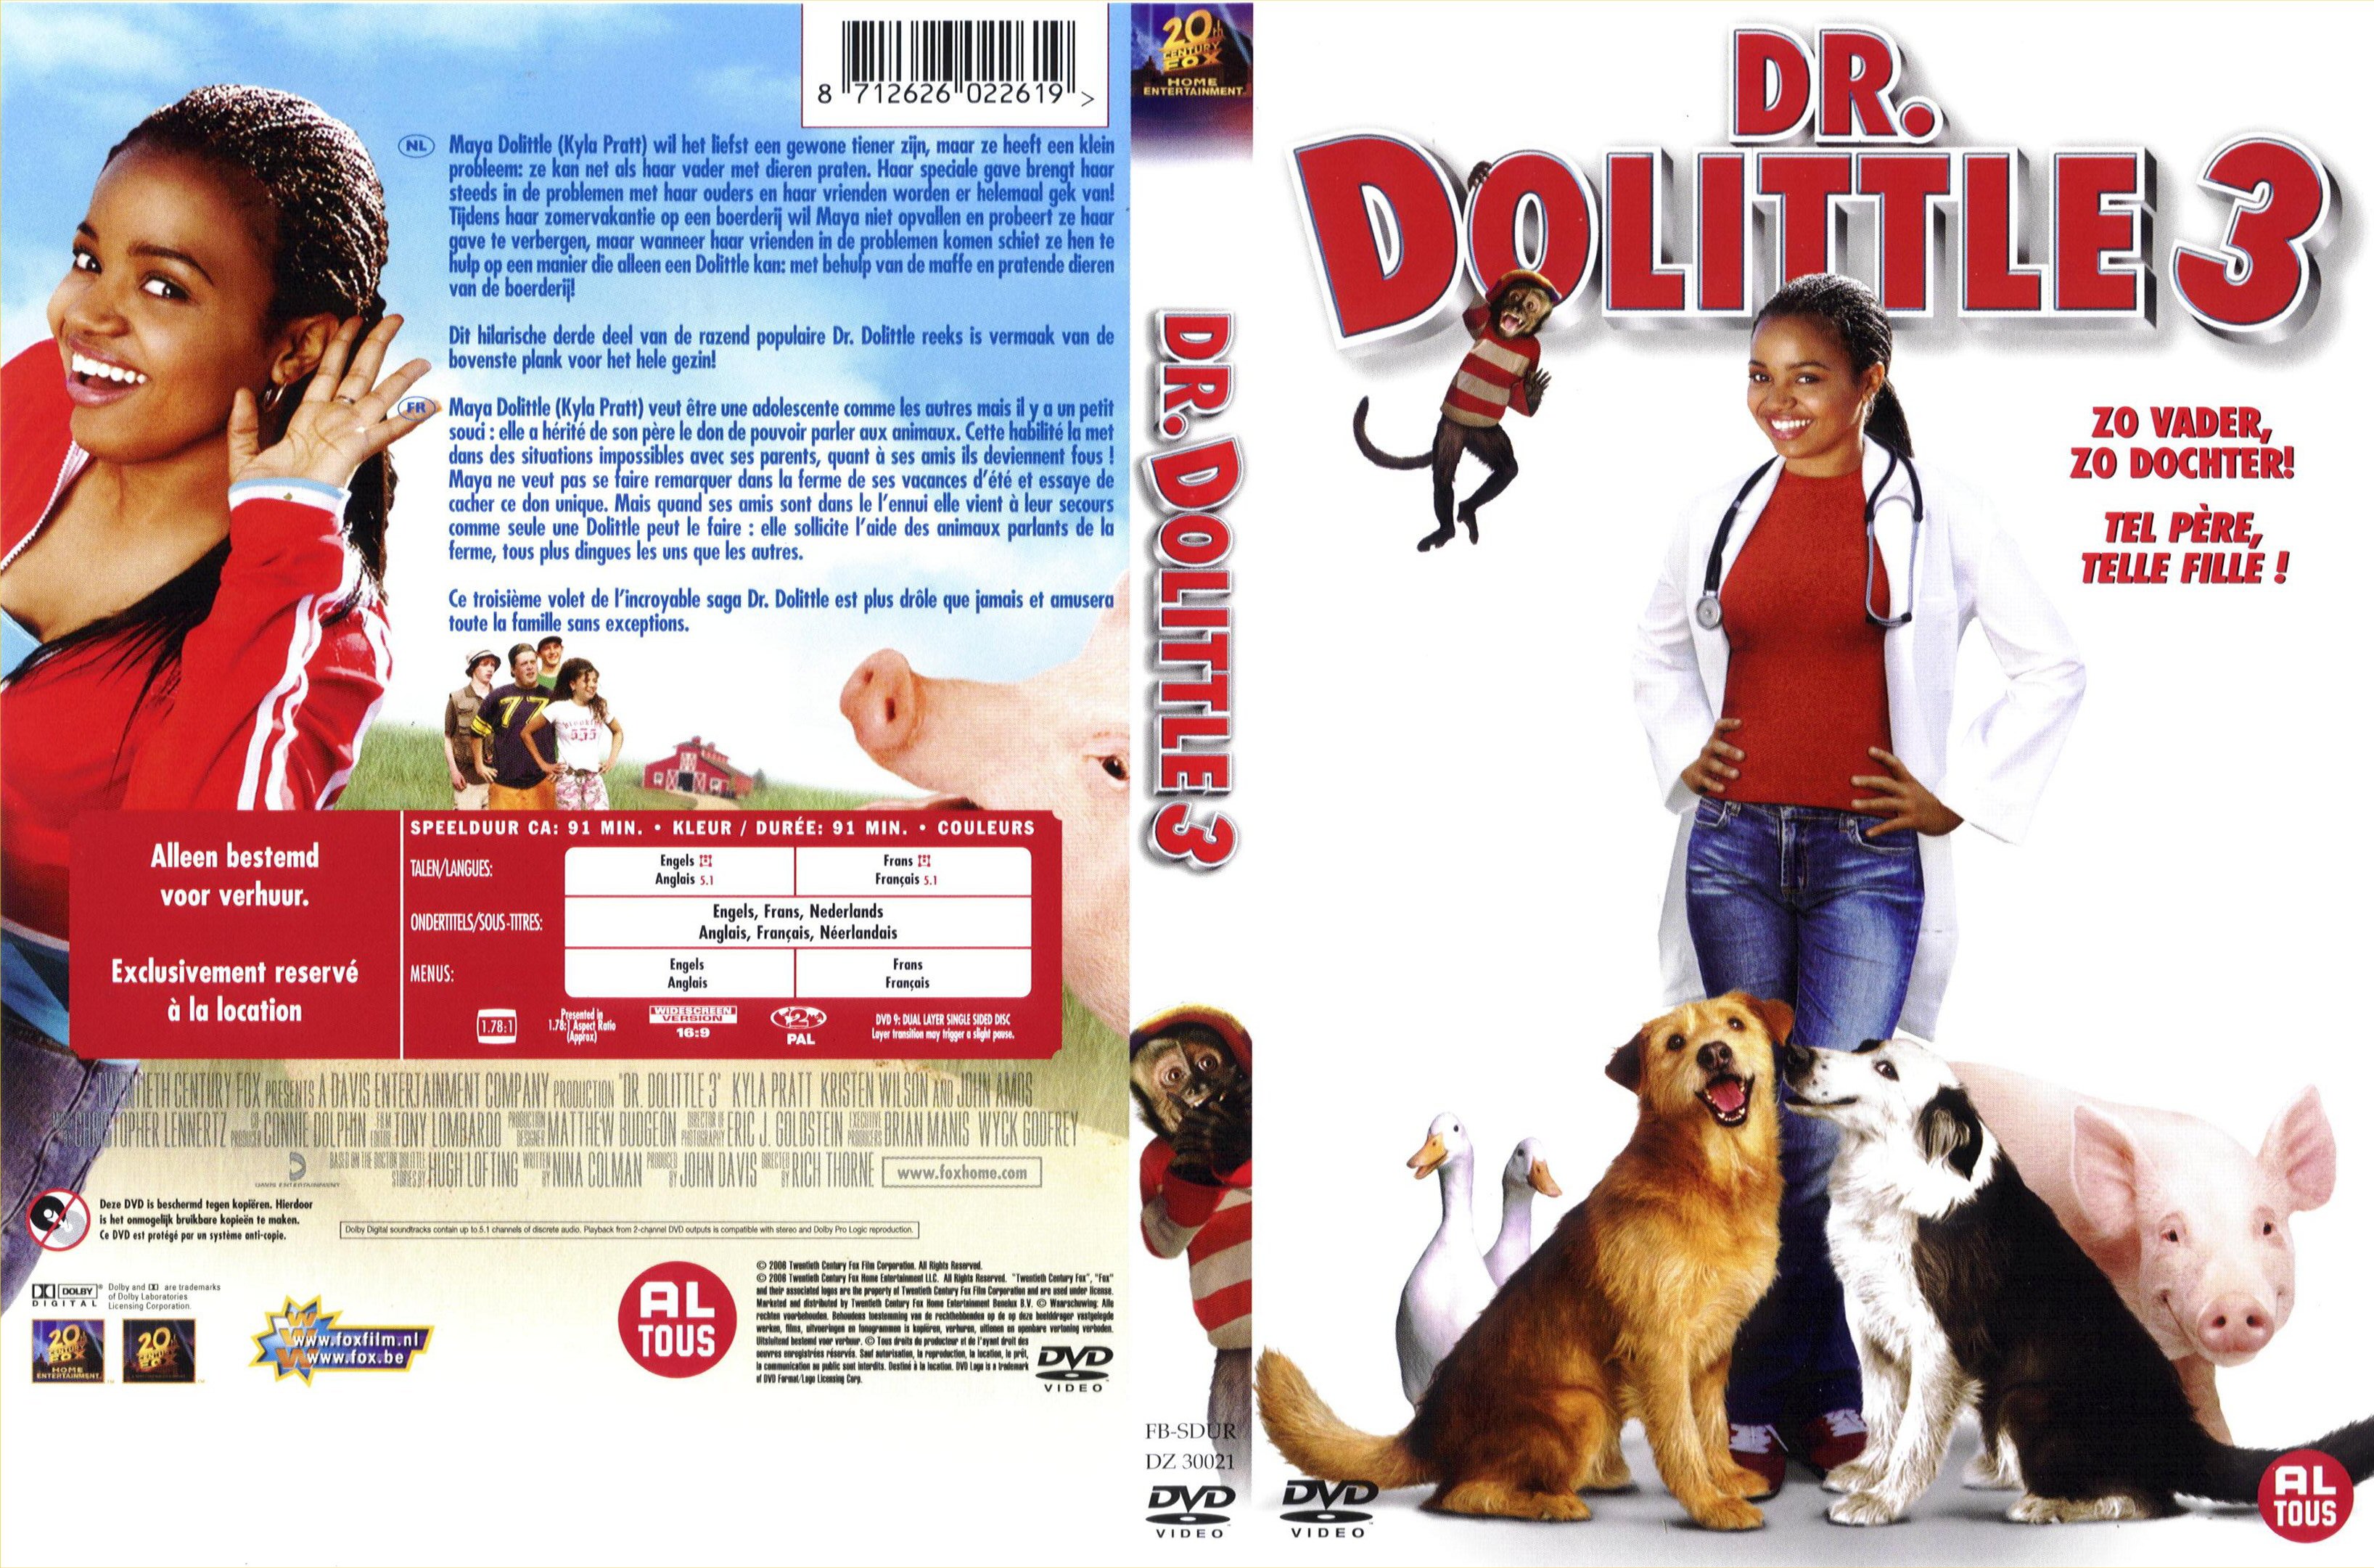 Jaquette DVD Docteur Dolittle 3 v2